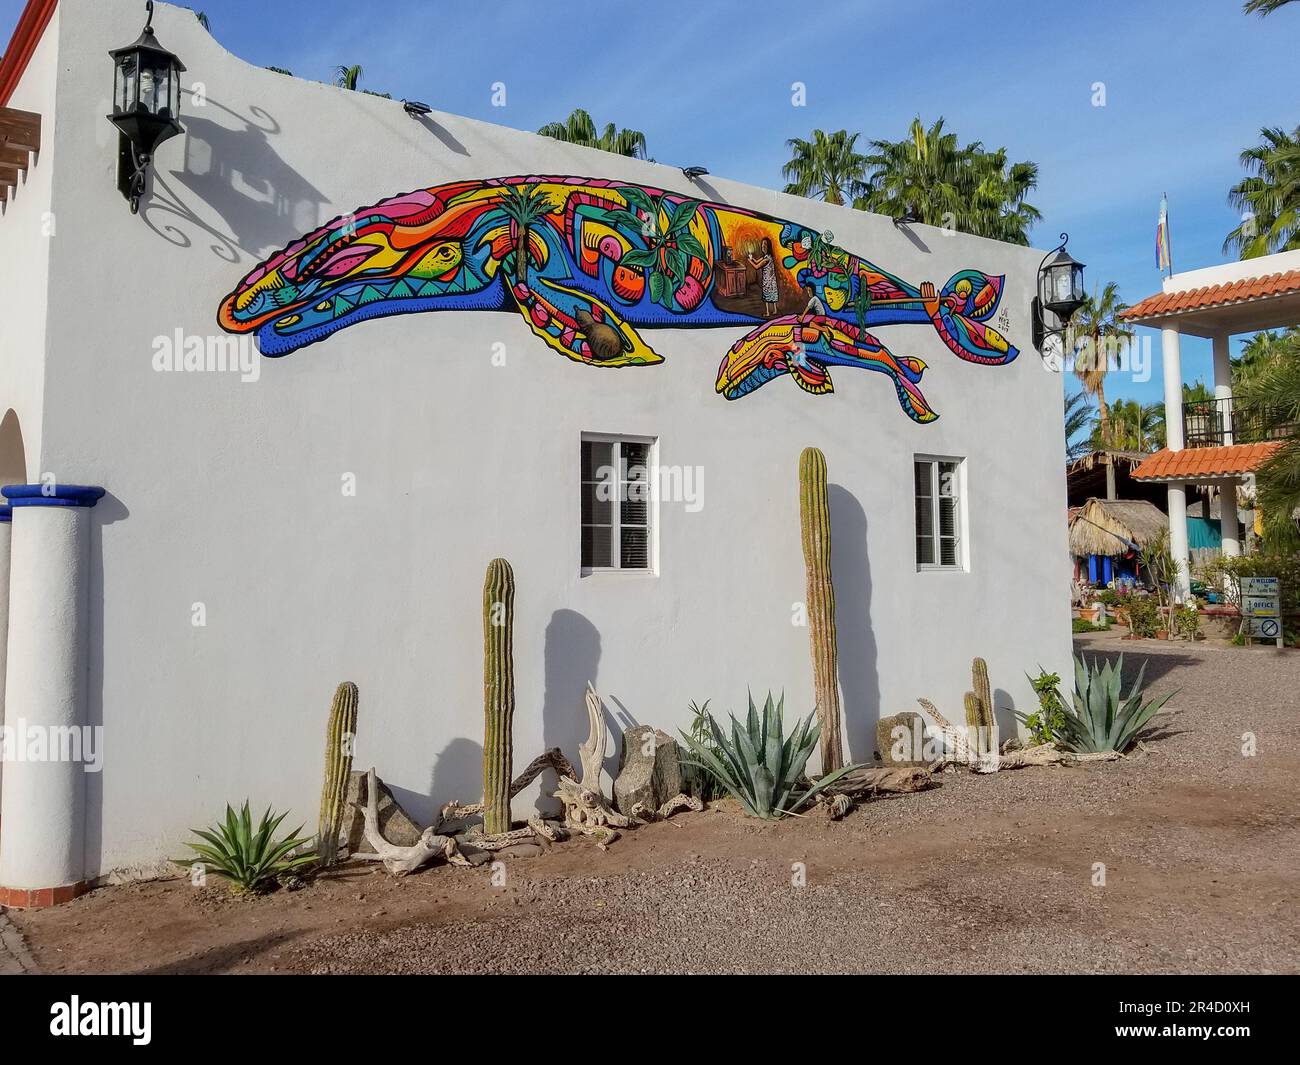 Colorful Whale Mural in Historic Loreto, near Danzante Bay in Baja California Sur, Mexico Stock Photo